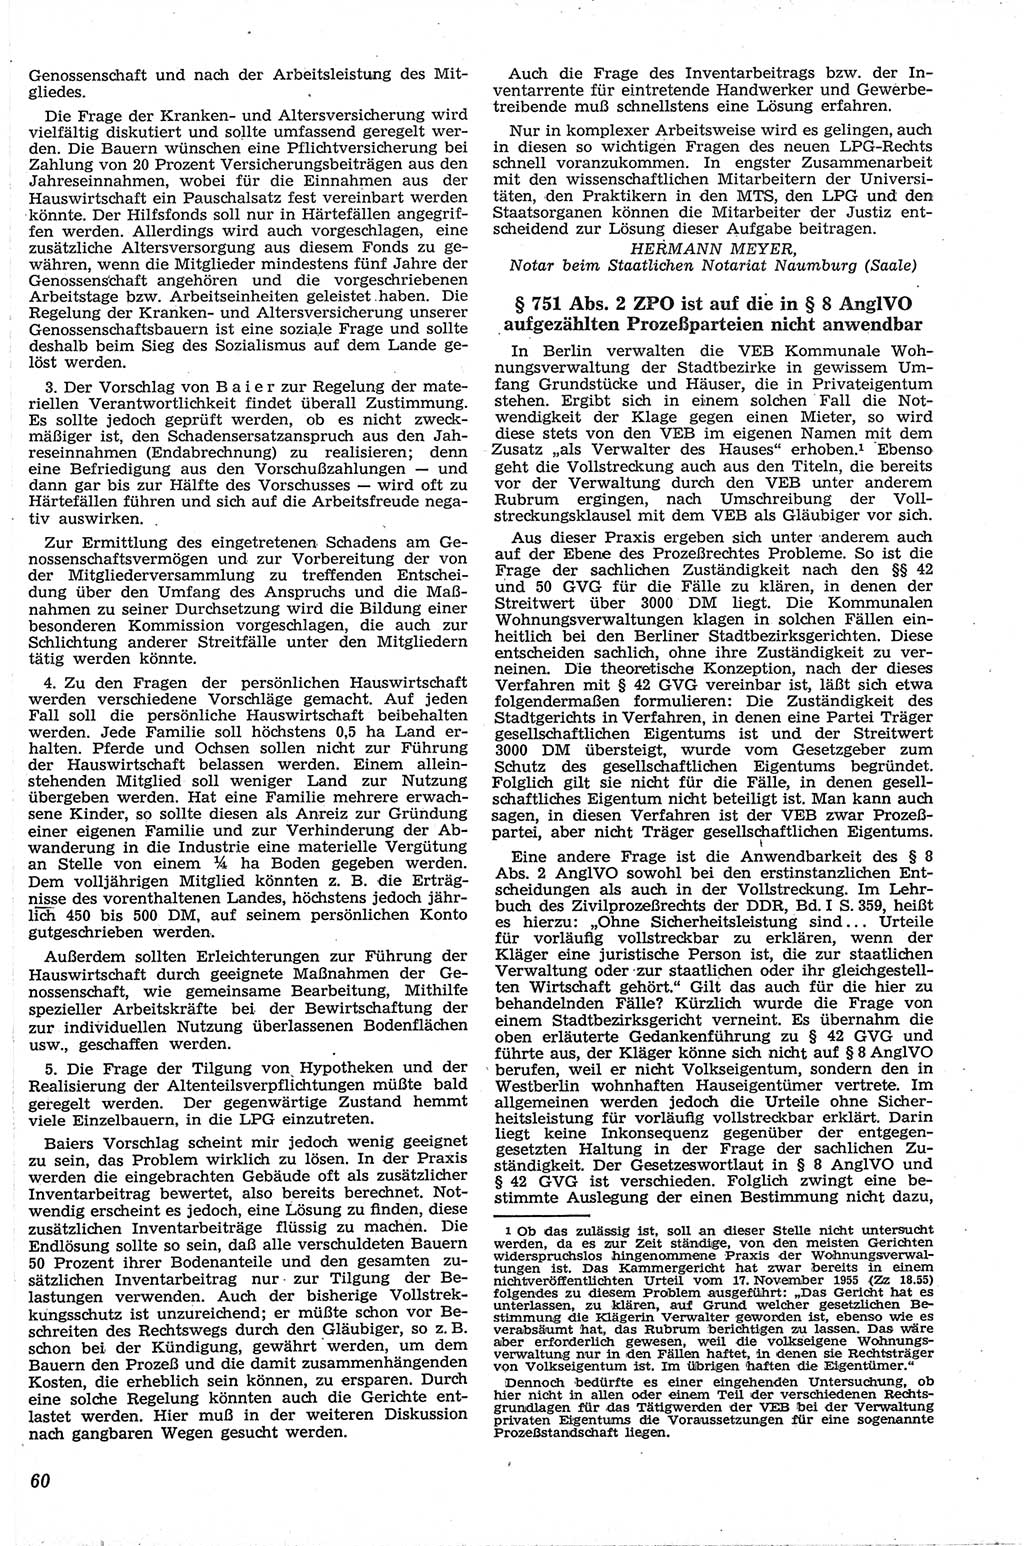 Neue Justiz (NJ), Zeitschrift für Recht und Rechtswissenschaft [Deutsche Demokratische Republik (DDR)], 13. Jahrgang 1959, Seite 60 (NJ DDR 1959, S. 60)